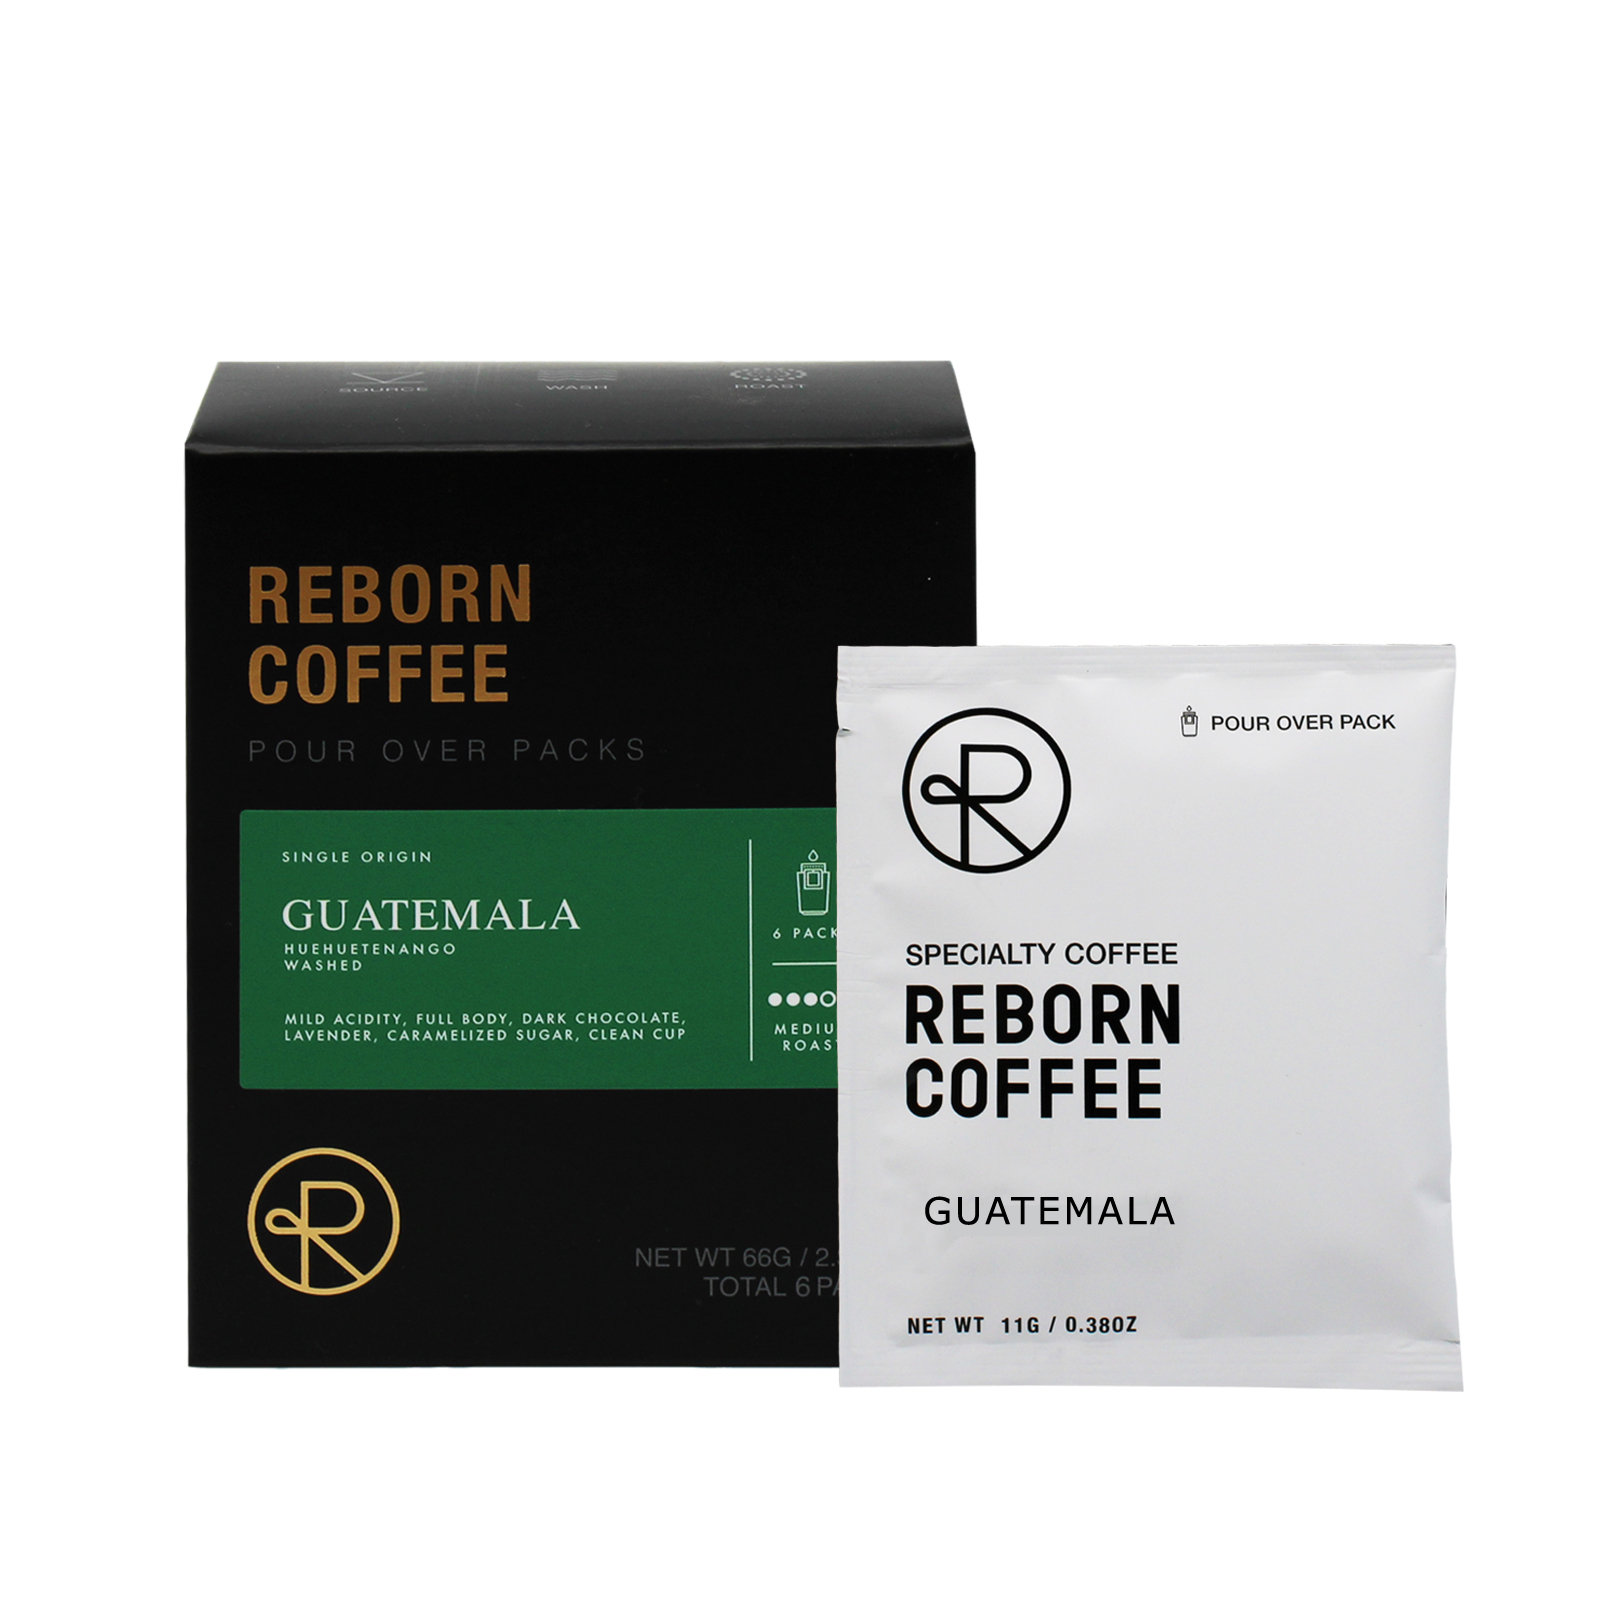 REBORN COFFEE - BREA - 826 Photos & 510 Reviews - 3373 E Imperial